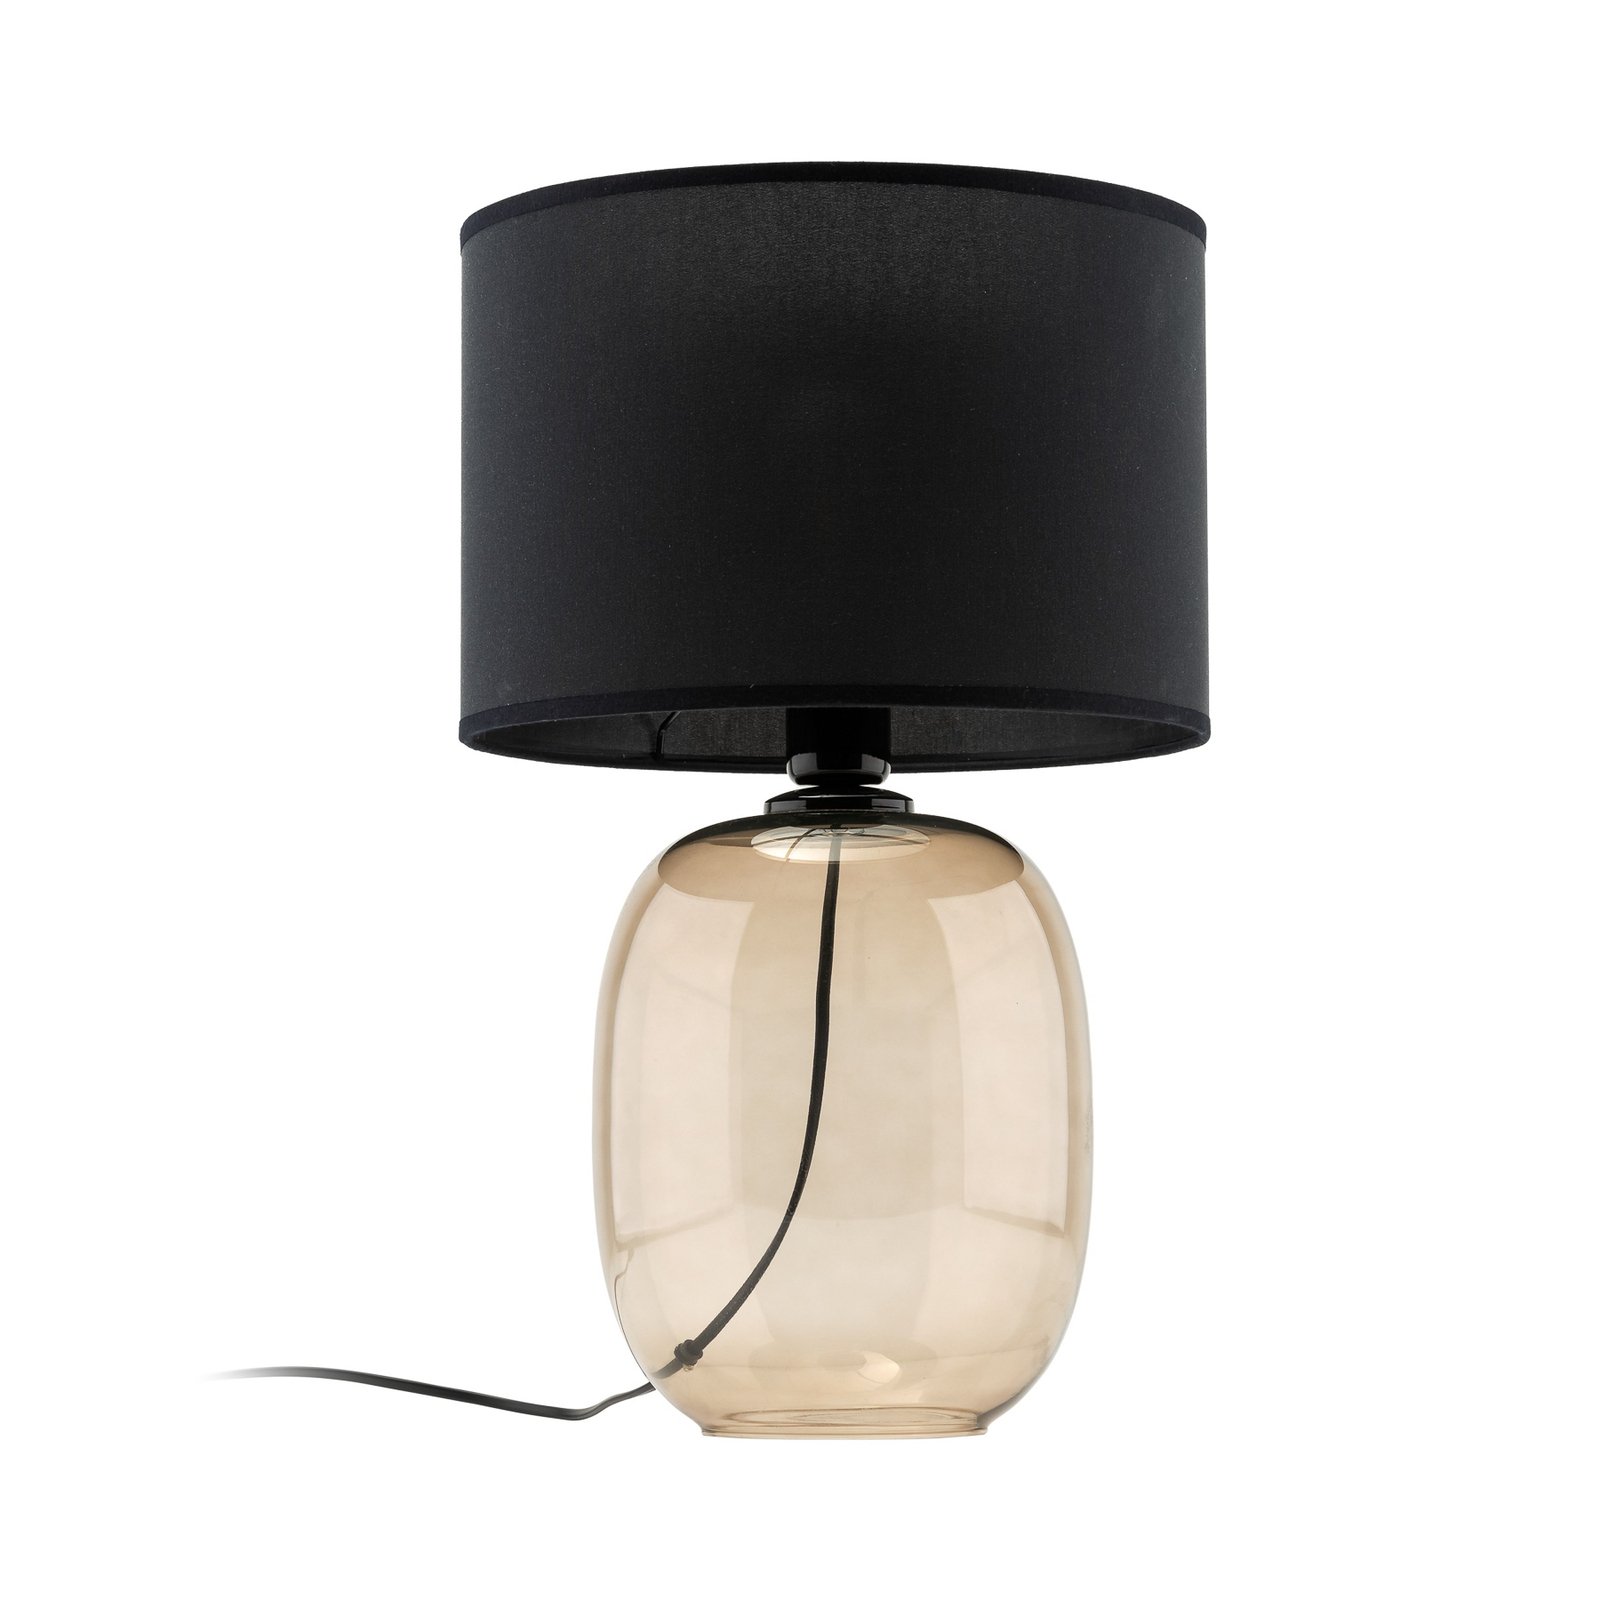 Melody bordlampe, højde 48 cm, brunt glas, sort tekstil